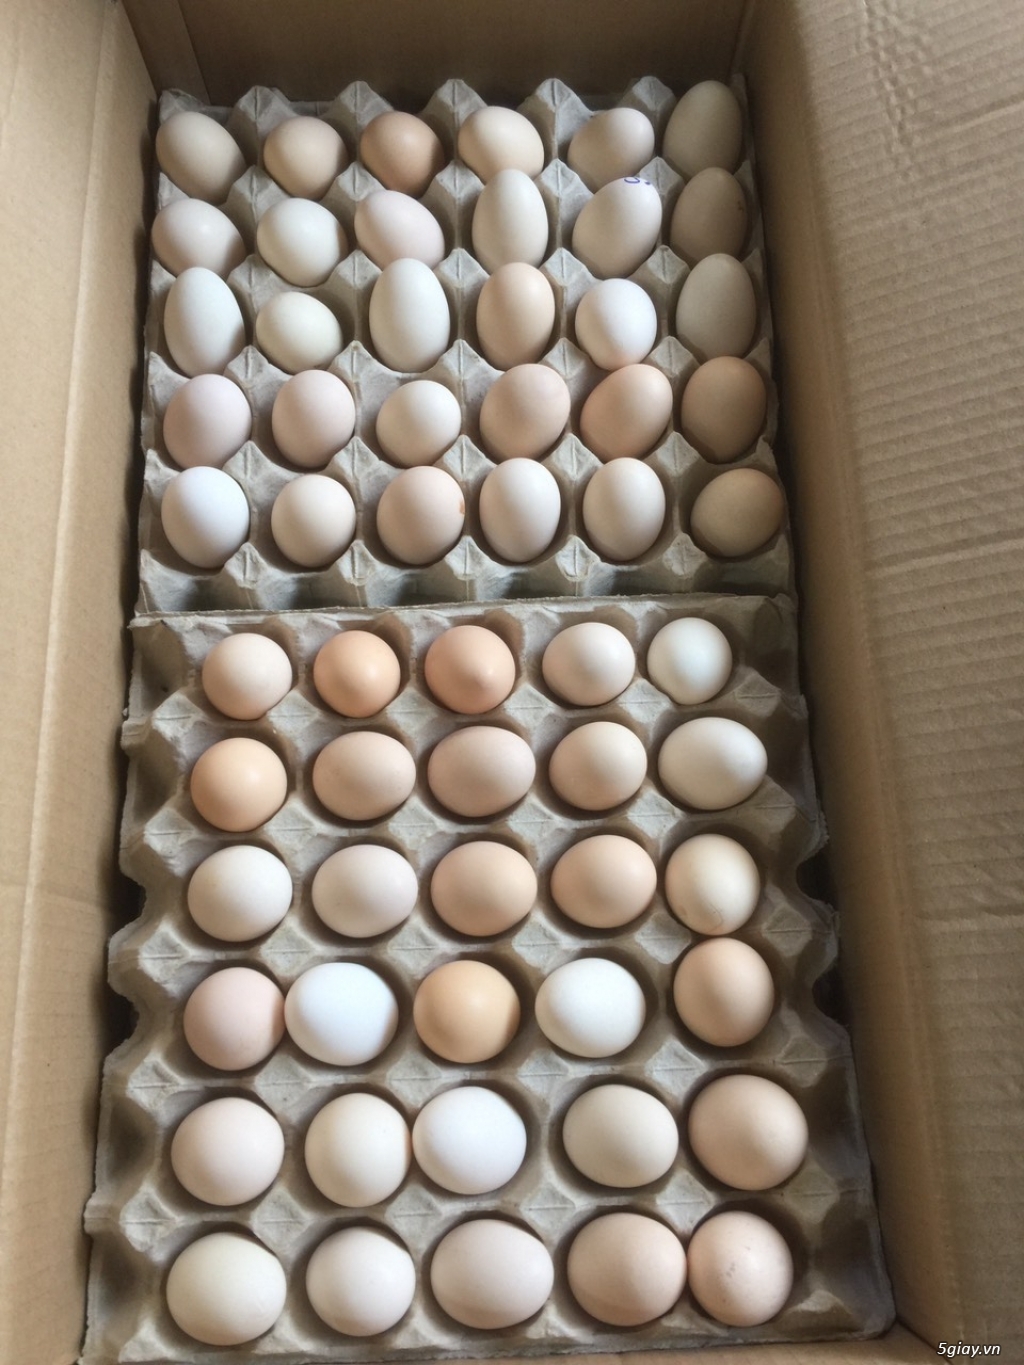 trang trại cần tìm đại lý, nhà phân phối trứng gà ác trên toàn quốc - 1